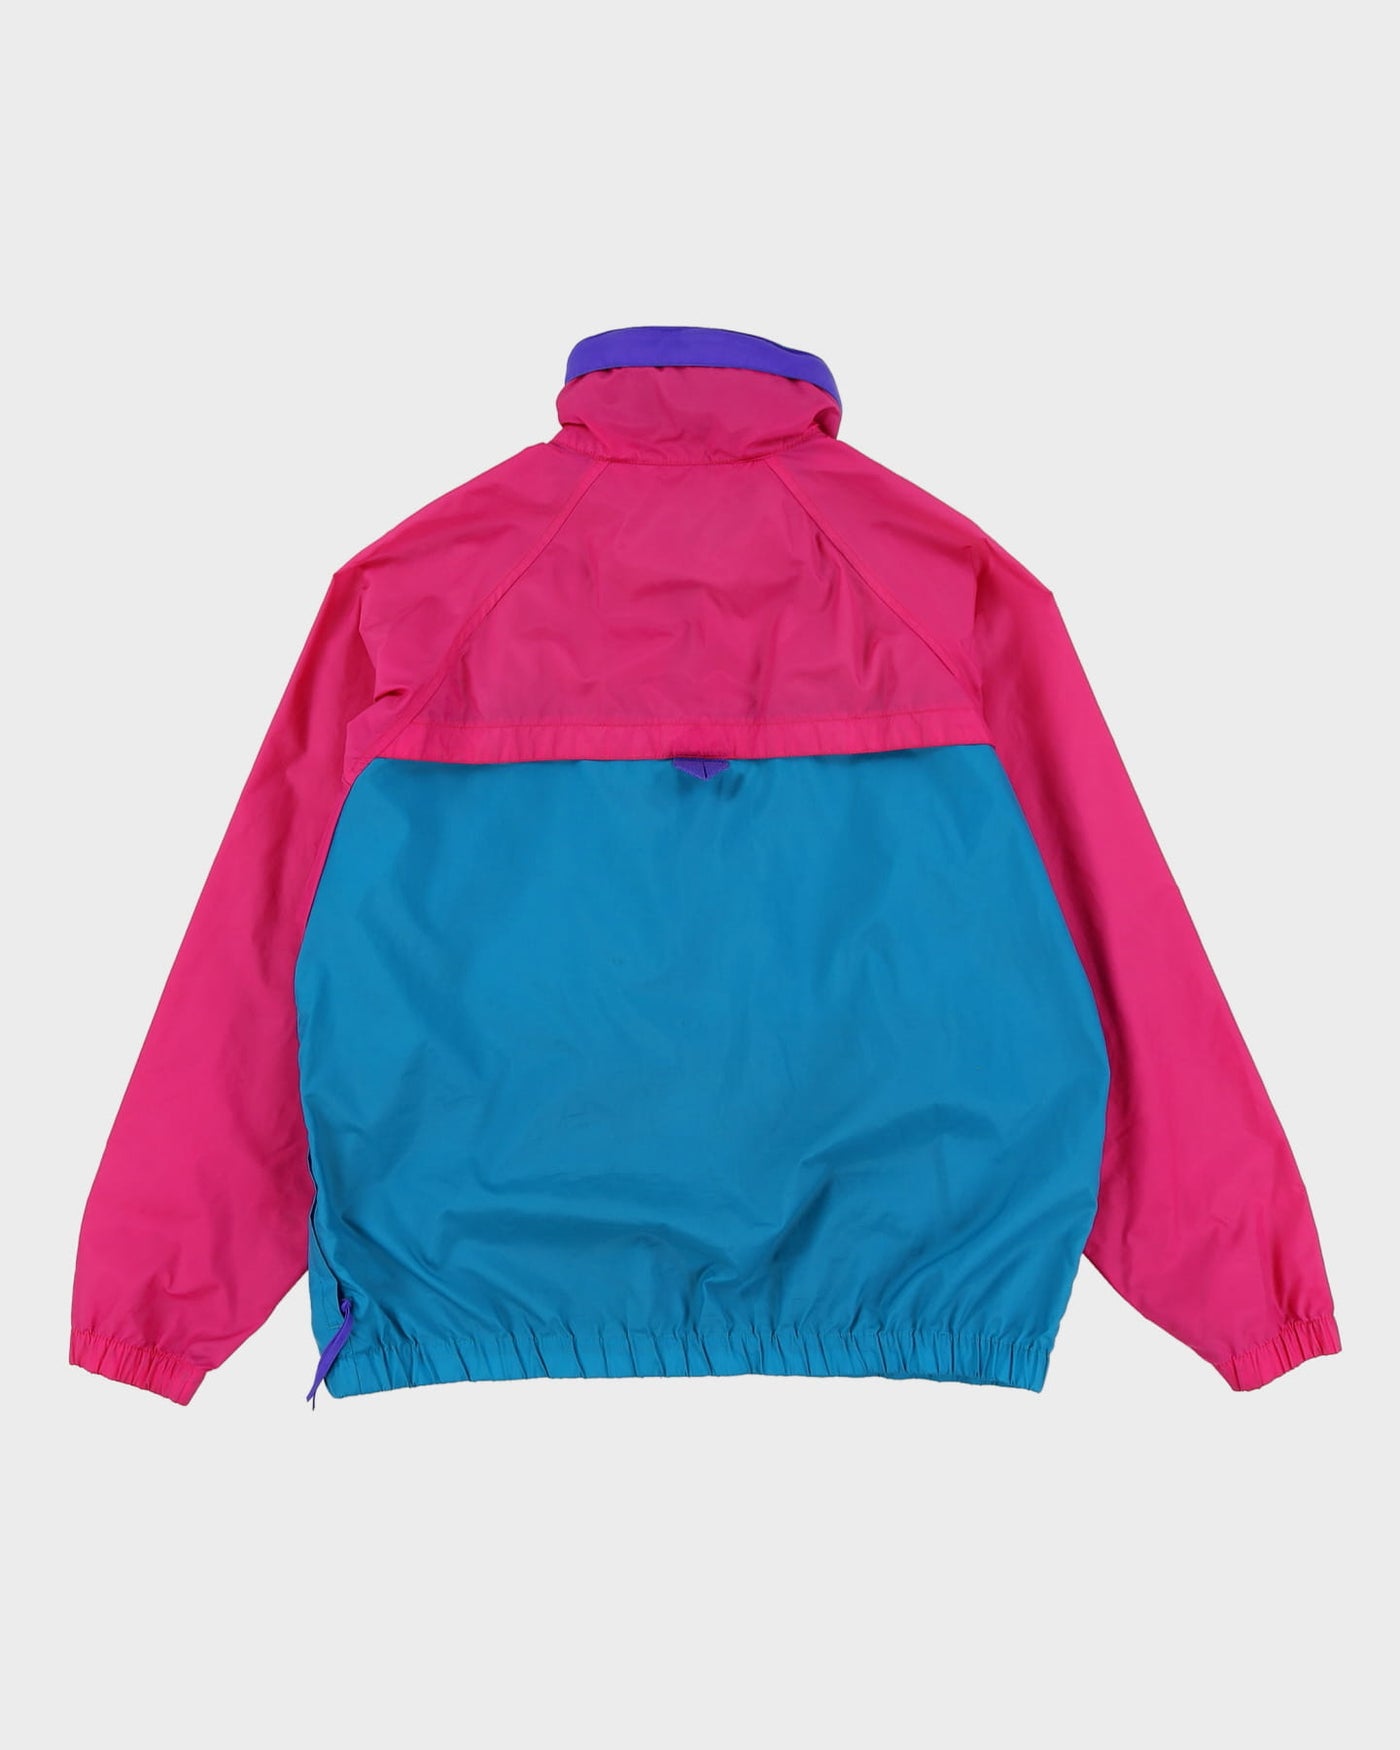 Vintage 90s Columbia Radial Sleeve Green / Pink Windbreaker Jacket - M